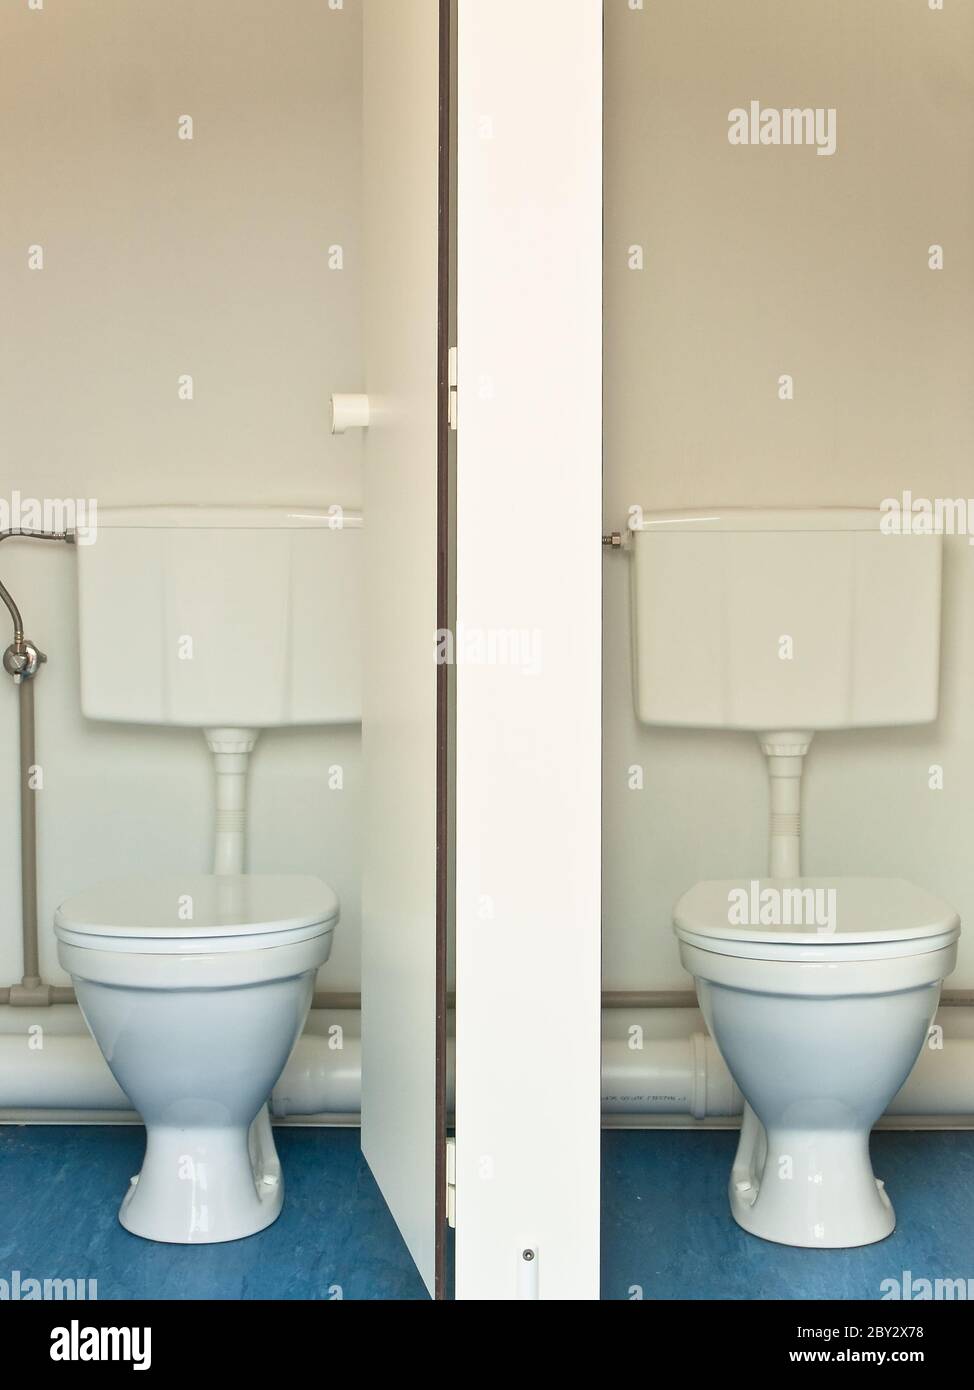 lavatory Stock Photo